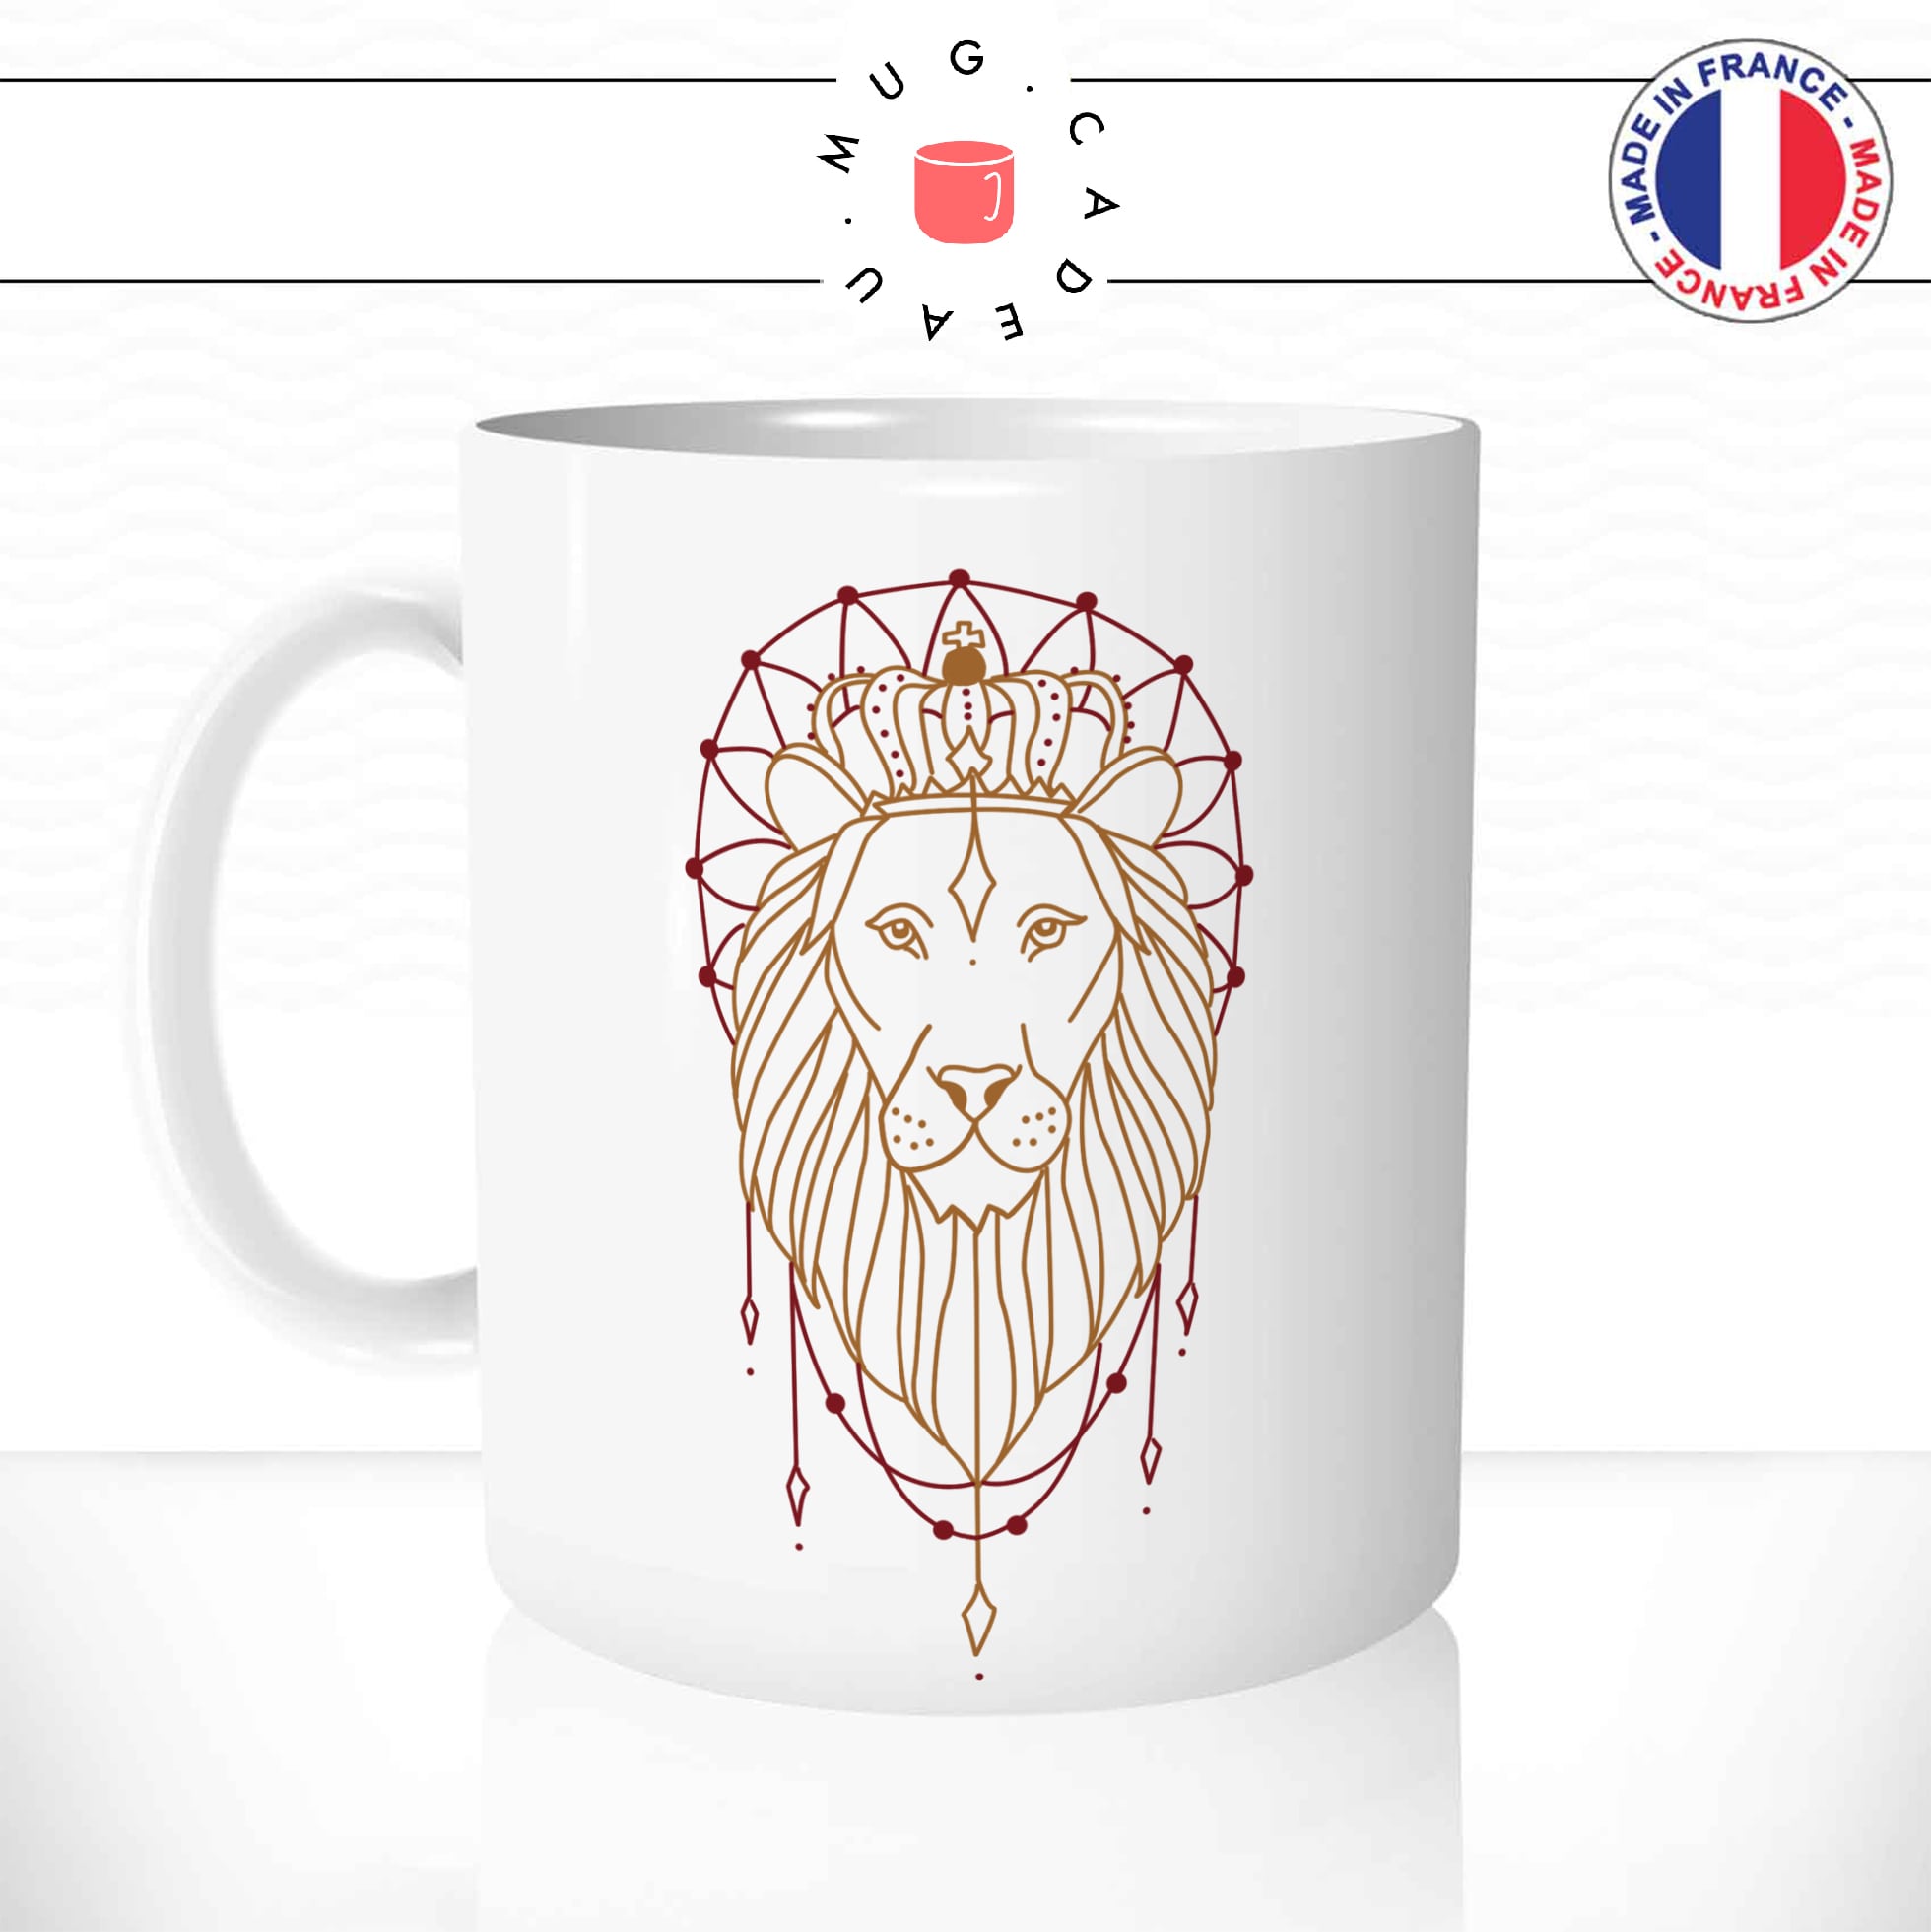 mug-tasse-animal-lion-roi-savanne-origami-couronne-drole-mignon-dessin-cool-fun-mugs-tasses-café-thé-idée-cadeau-original-personnalisé-personnalisable